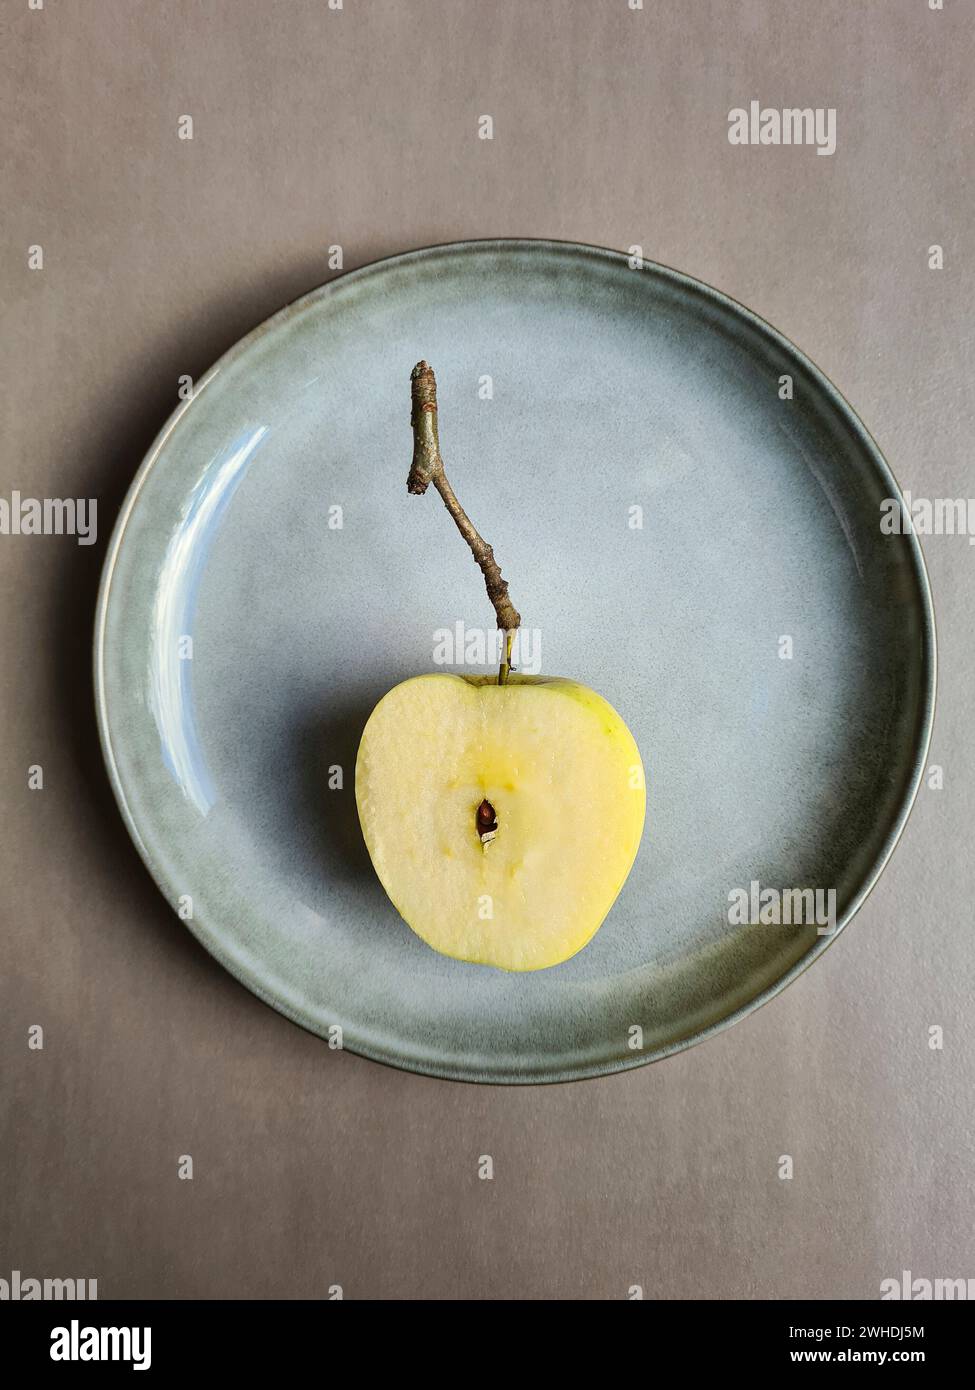 Ein frischer halbierter Apfel mit Kern liegt auf einem pastellfarbenen Teller und hellgrauem Hintergrund Stockfoto